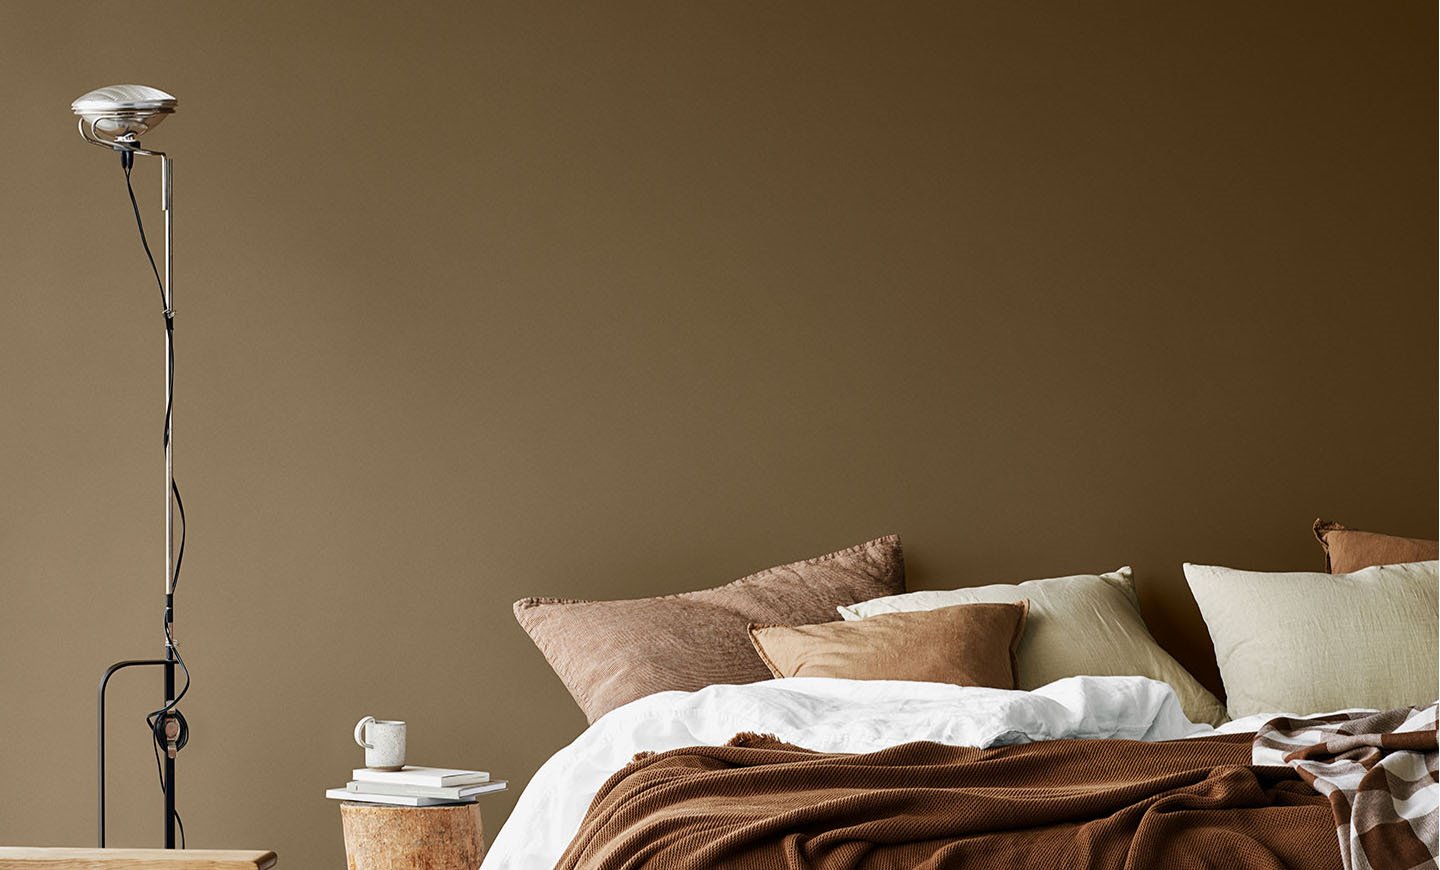 Dormitorio en color beige tostado y marron. Contraste de pareceres